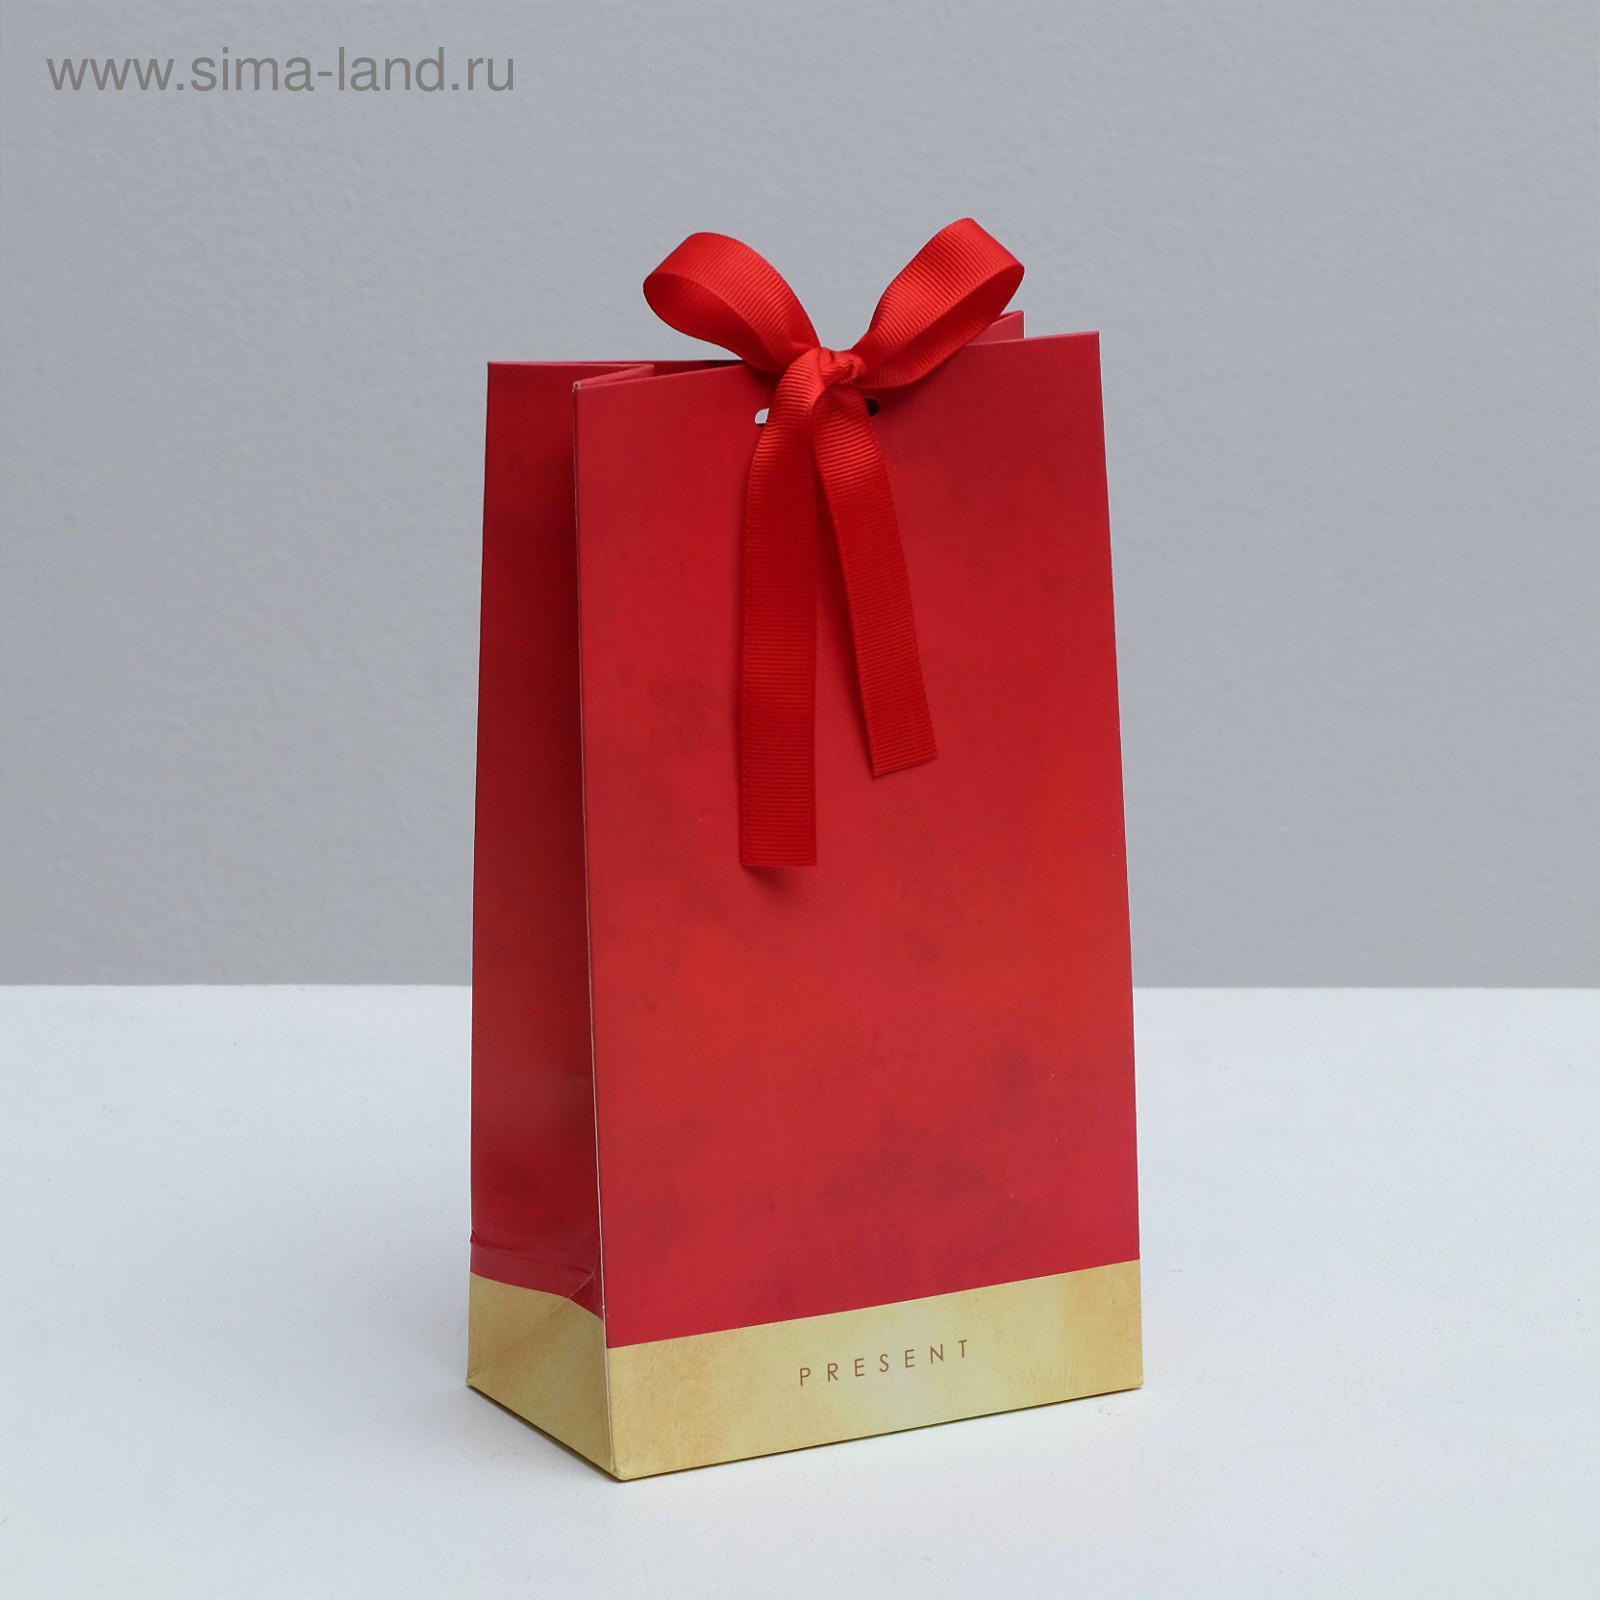 Пакет подарочный с лентой PRESENT, 13 × 23 × 7 см